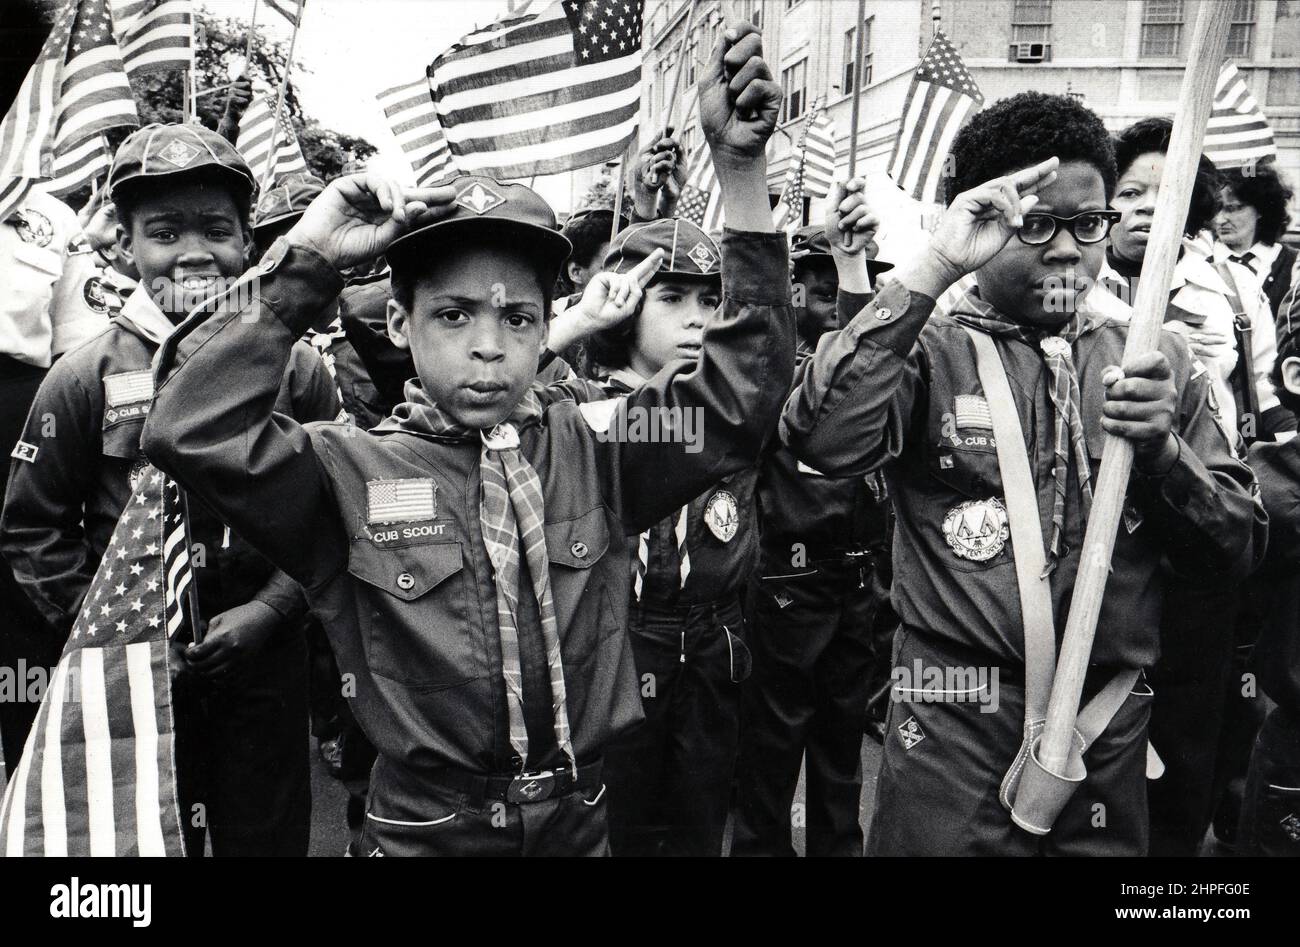 Inmitten eines Meeres von Flaggen grüßen patriotische Cub Scouts mit 3 Fingern. Bei einer Veteran's Day Parade in Manhattan, New York um 1976. Stockfoto